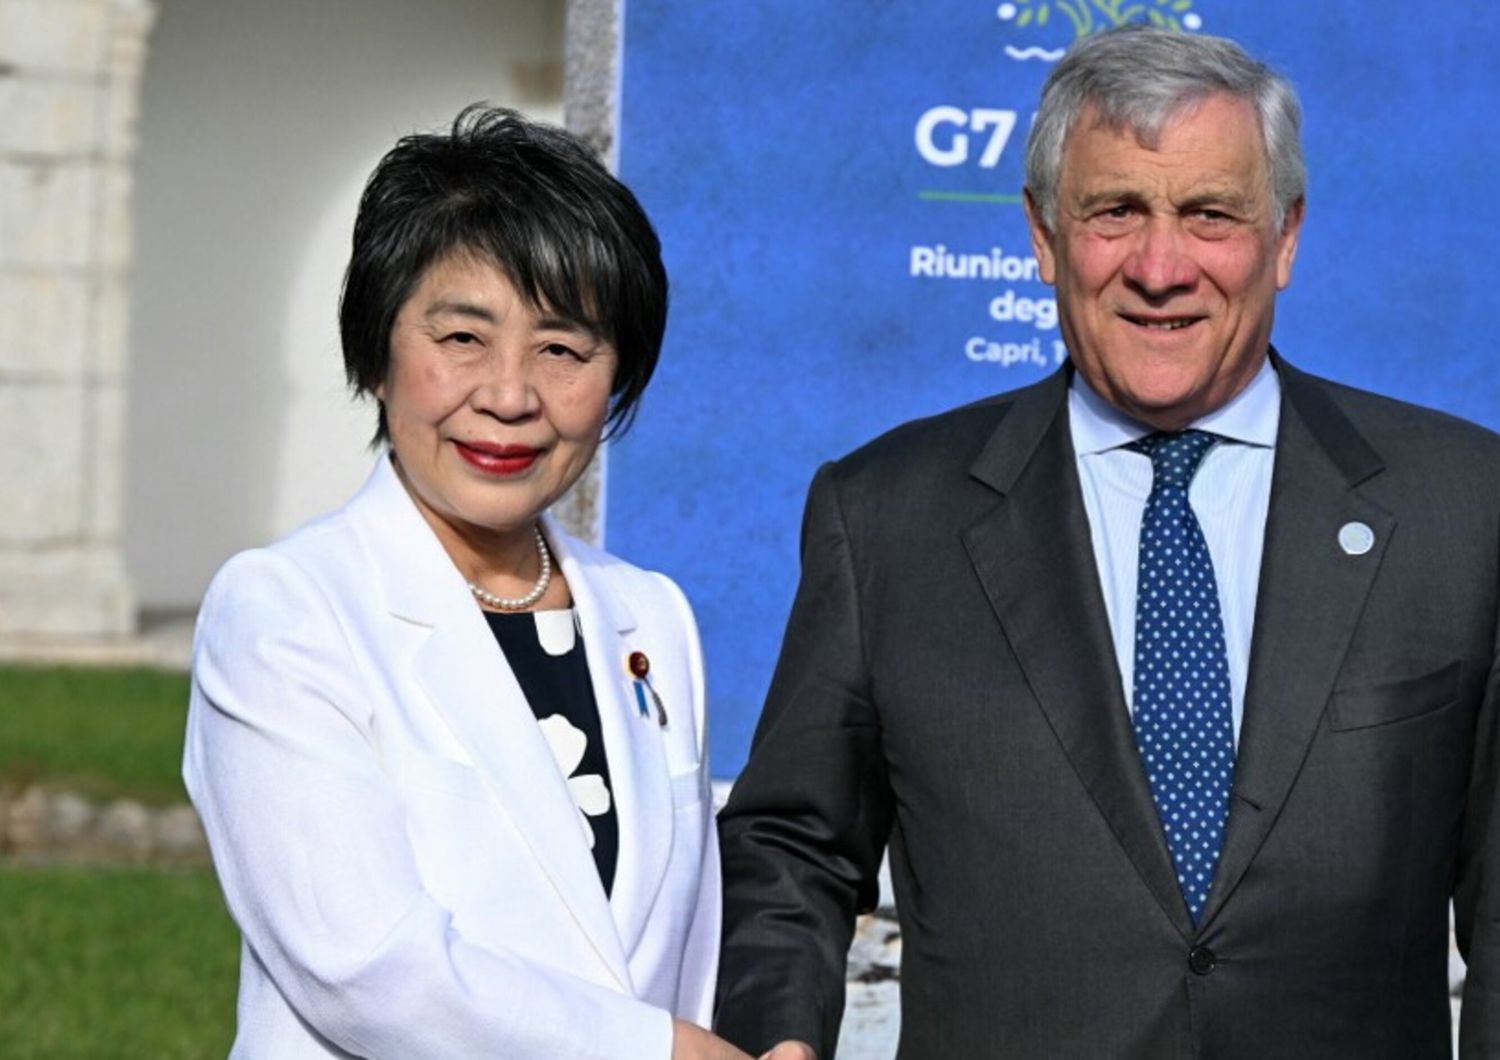 Il Ministro degli Affari Esteri giapponese Yoko Kamikawa accolta dal Ministro degli Affari Esteri italiano Antonio Tajani al suo arrivo per la riunione del G7 presso la Certosa di San Giacomo, sull'isola di Capri